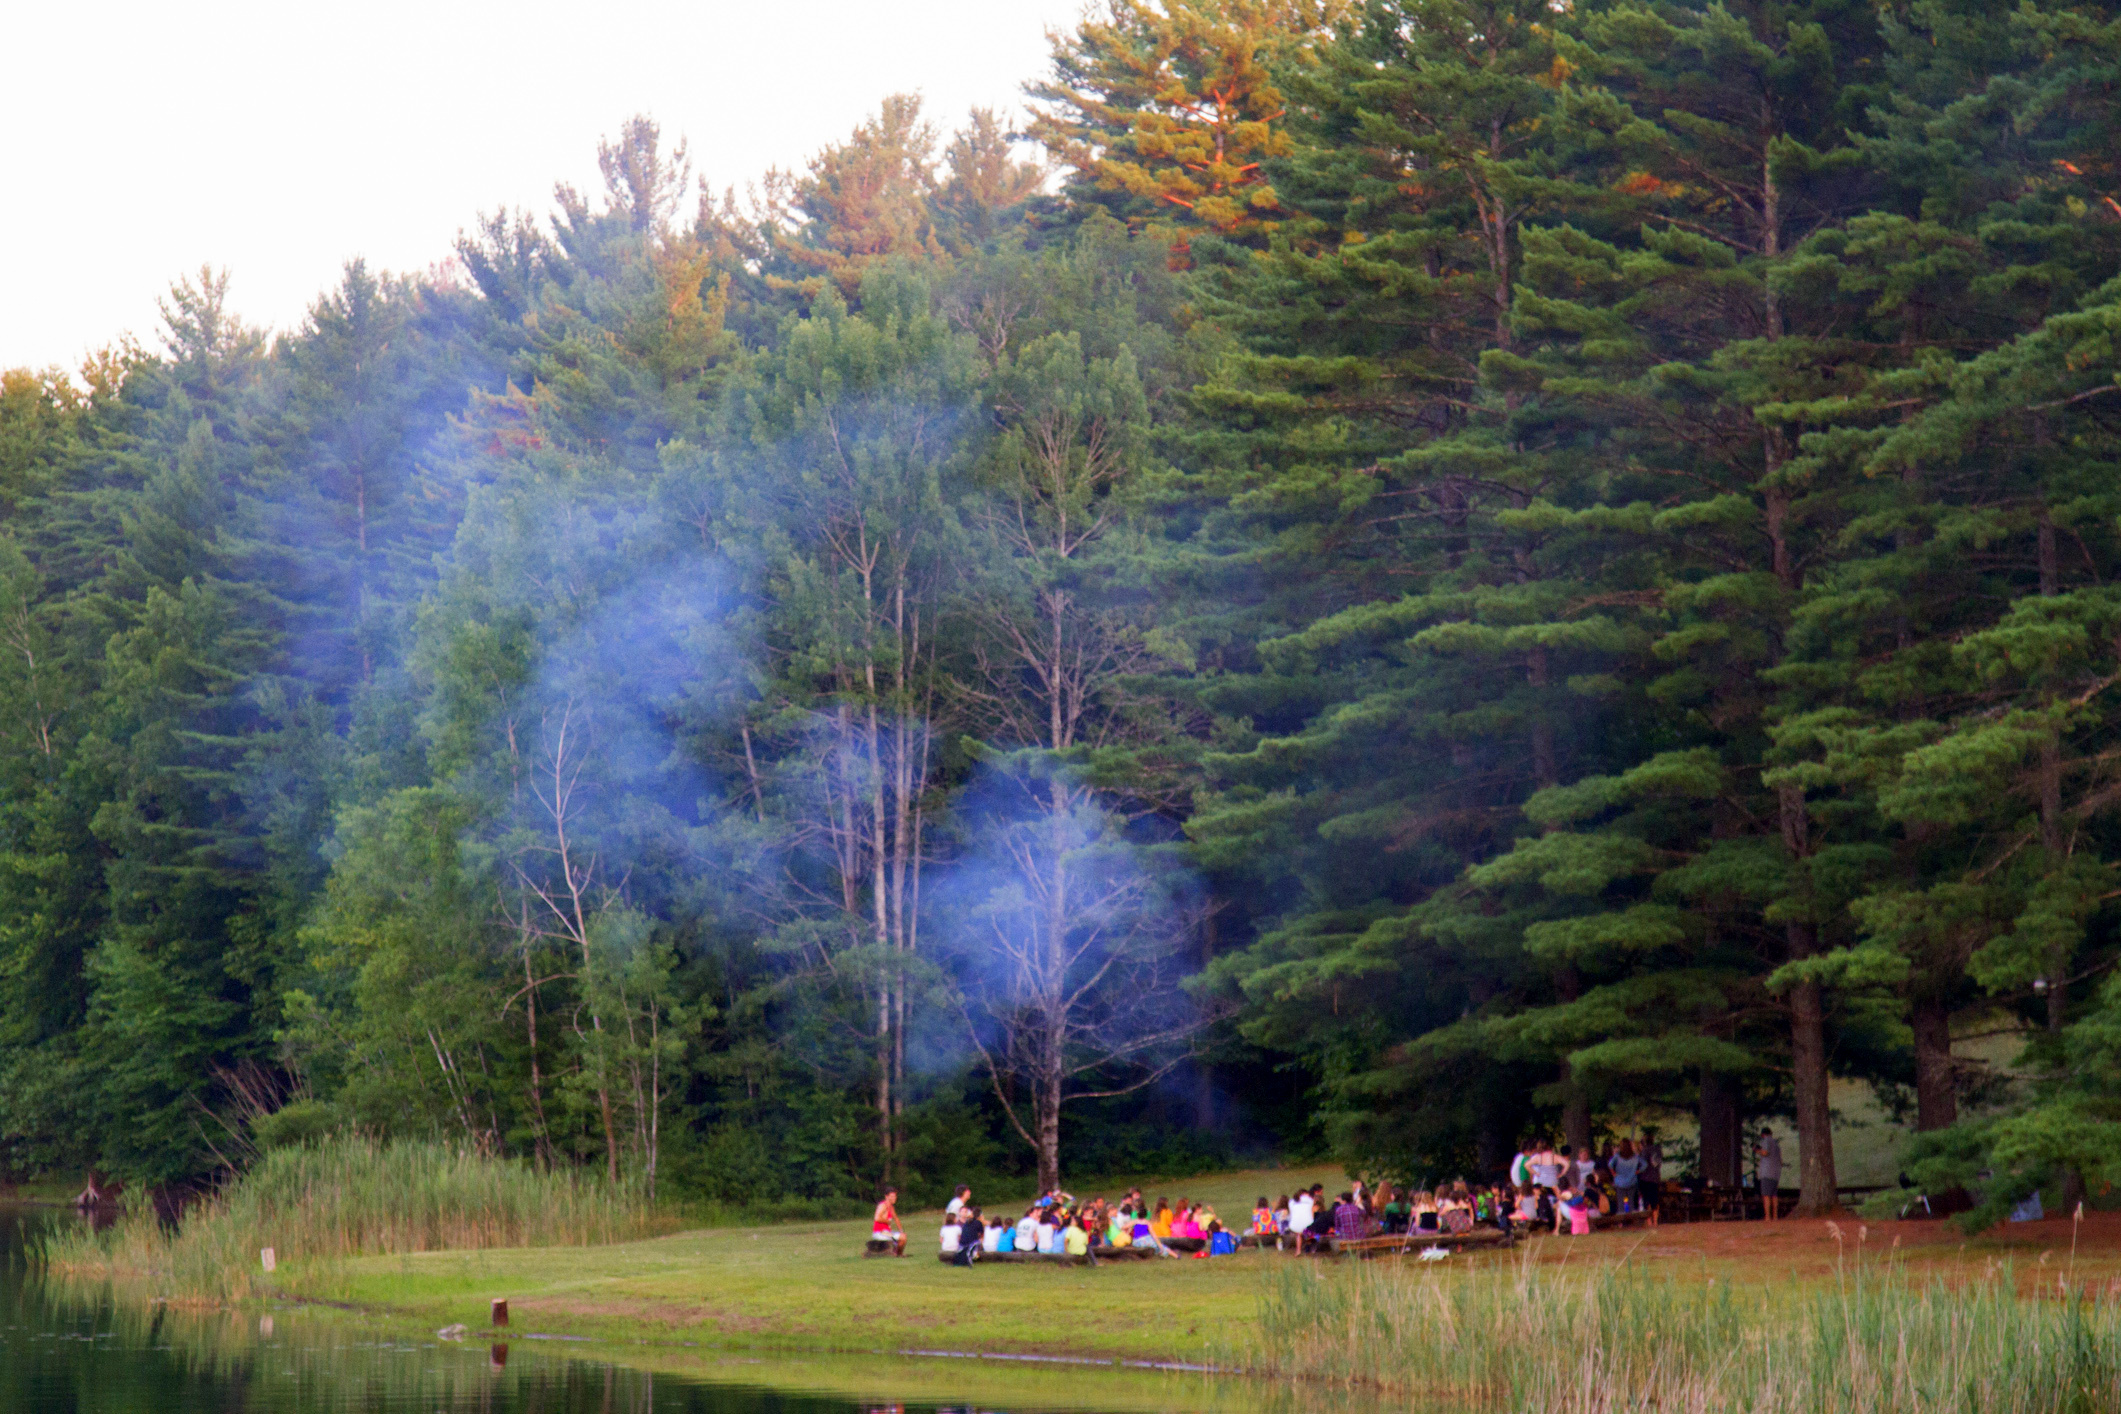 campers after camp registration